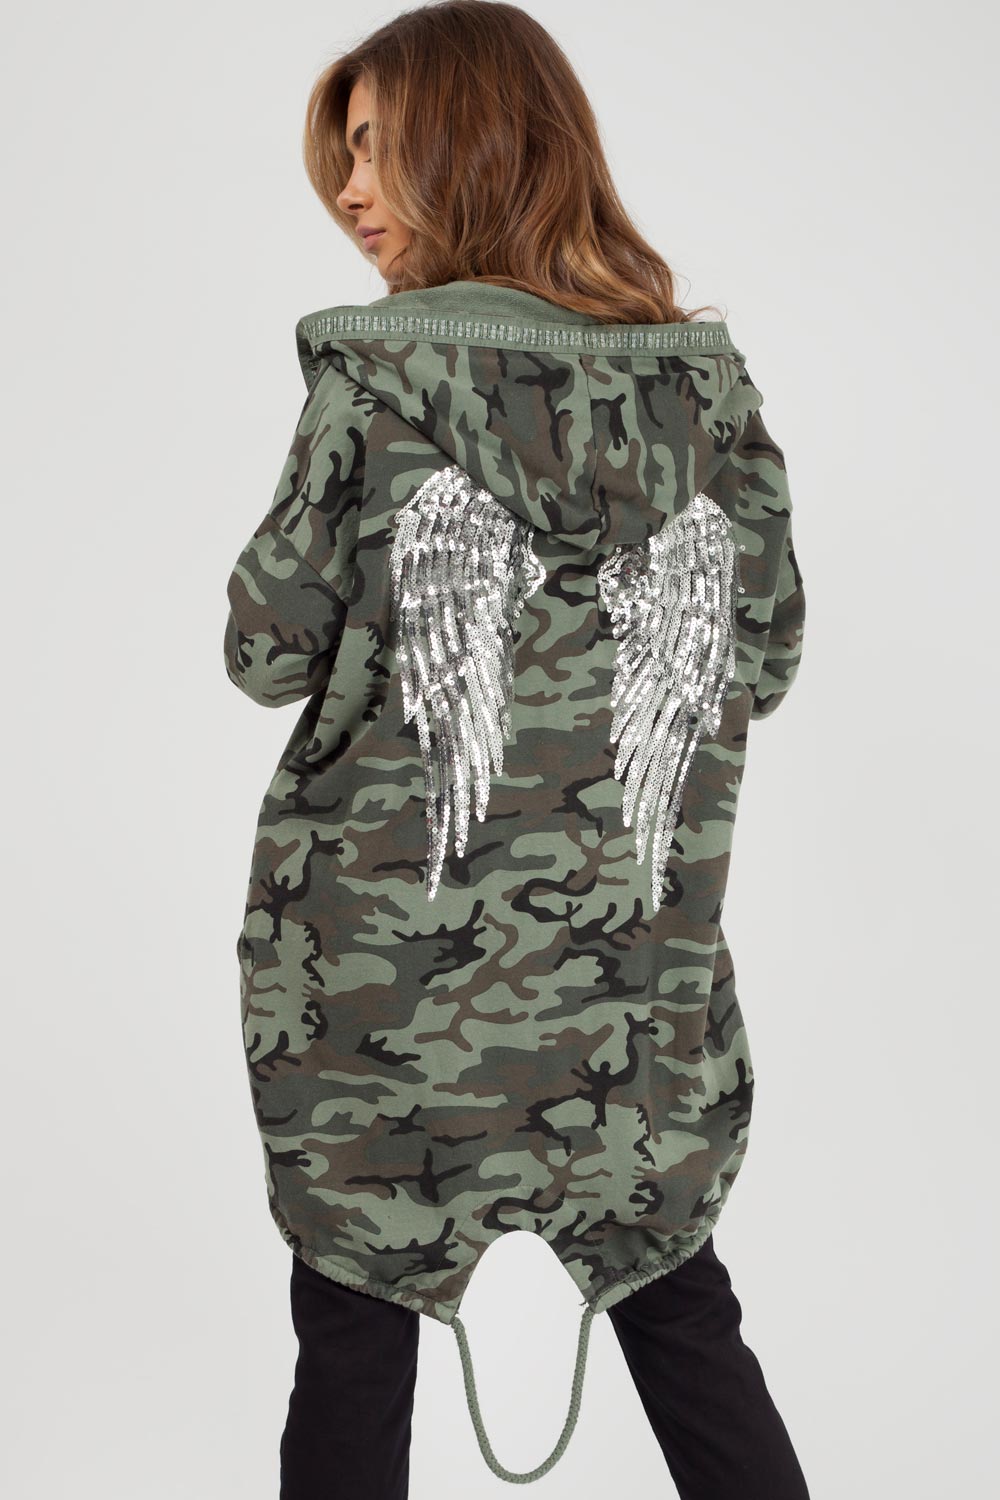 sequin angel wing hoodie